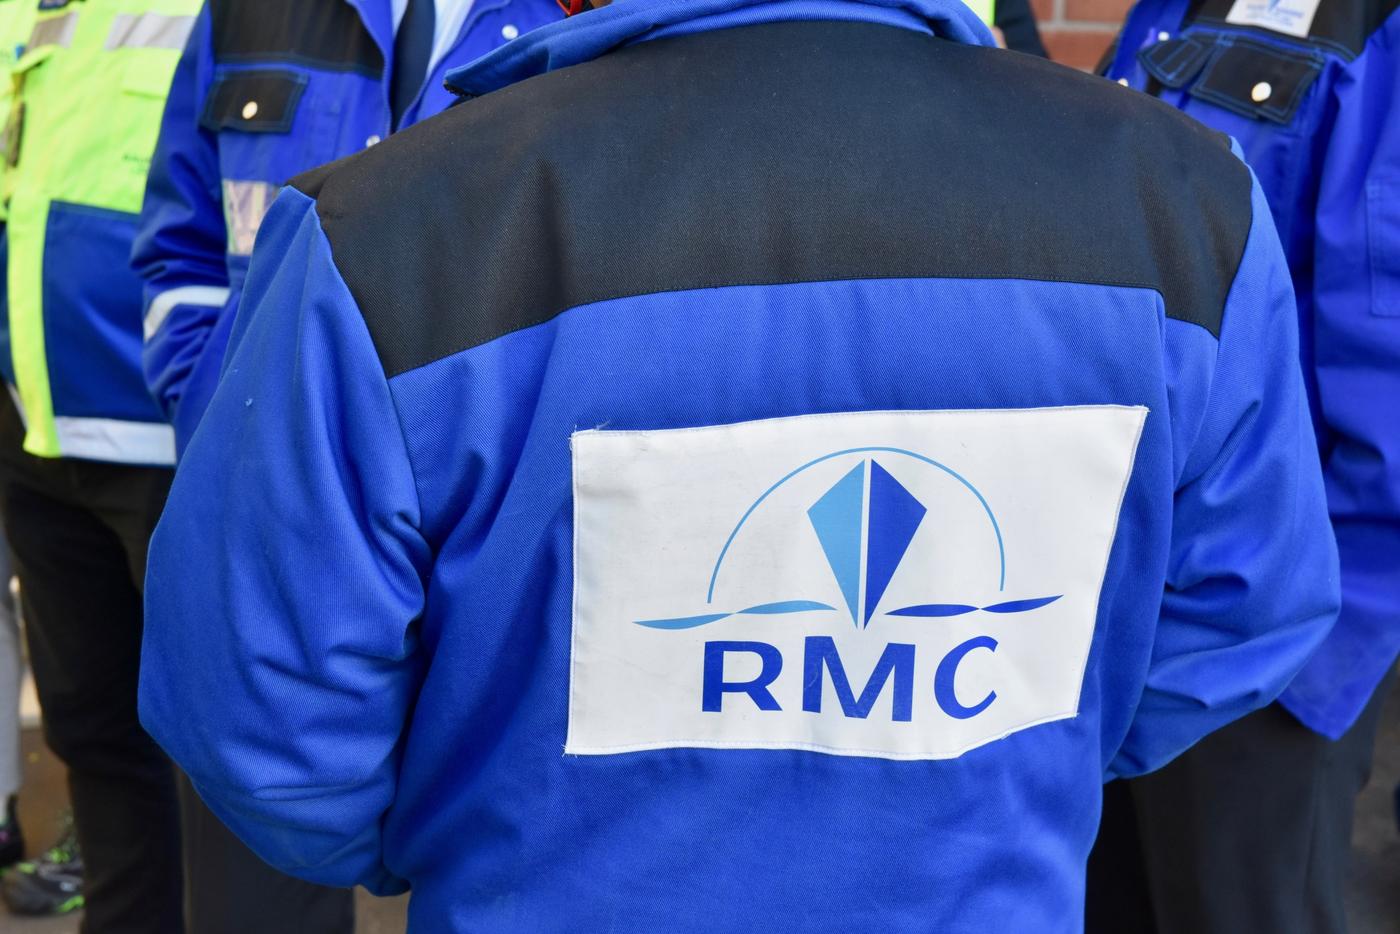 Rygg på bilden. På den blåa jackan står RMC, det vill säga Rauma Marine Constructions.